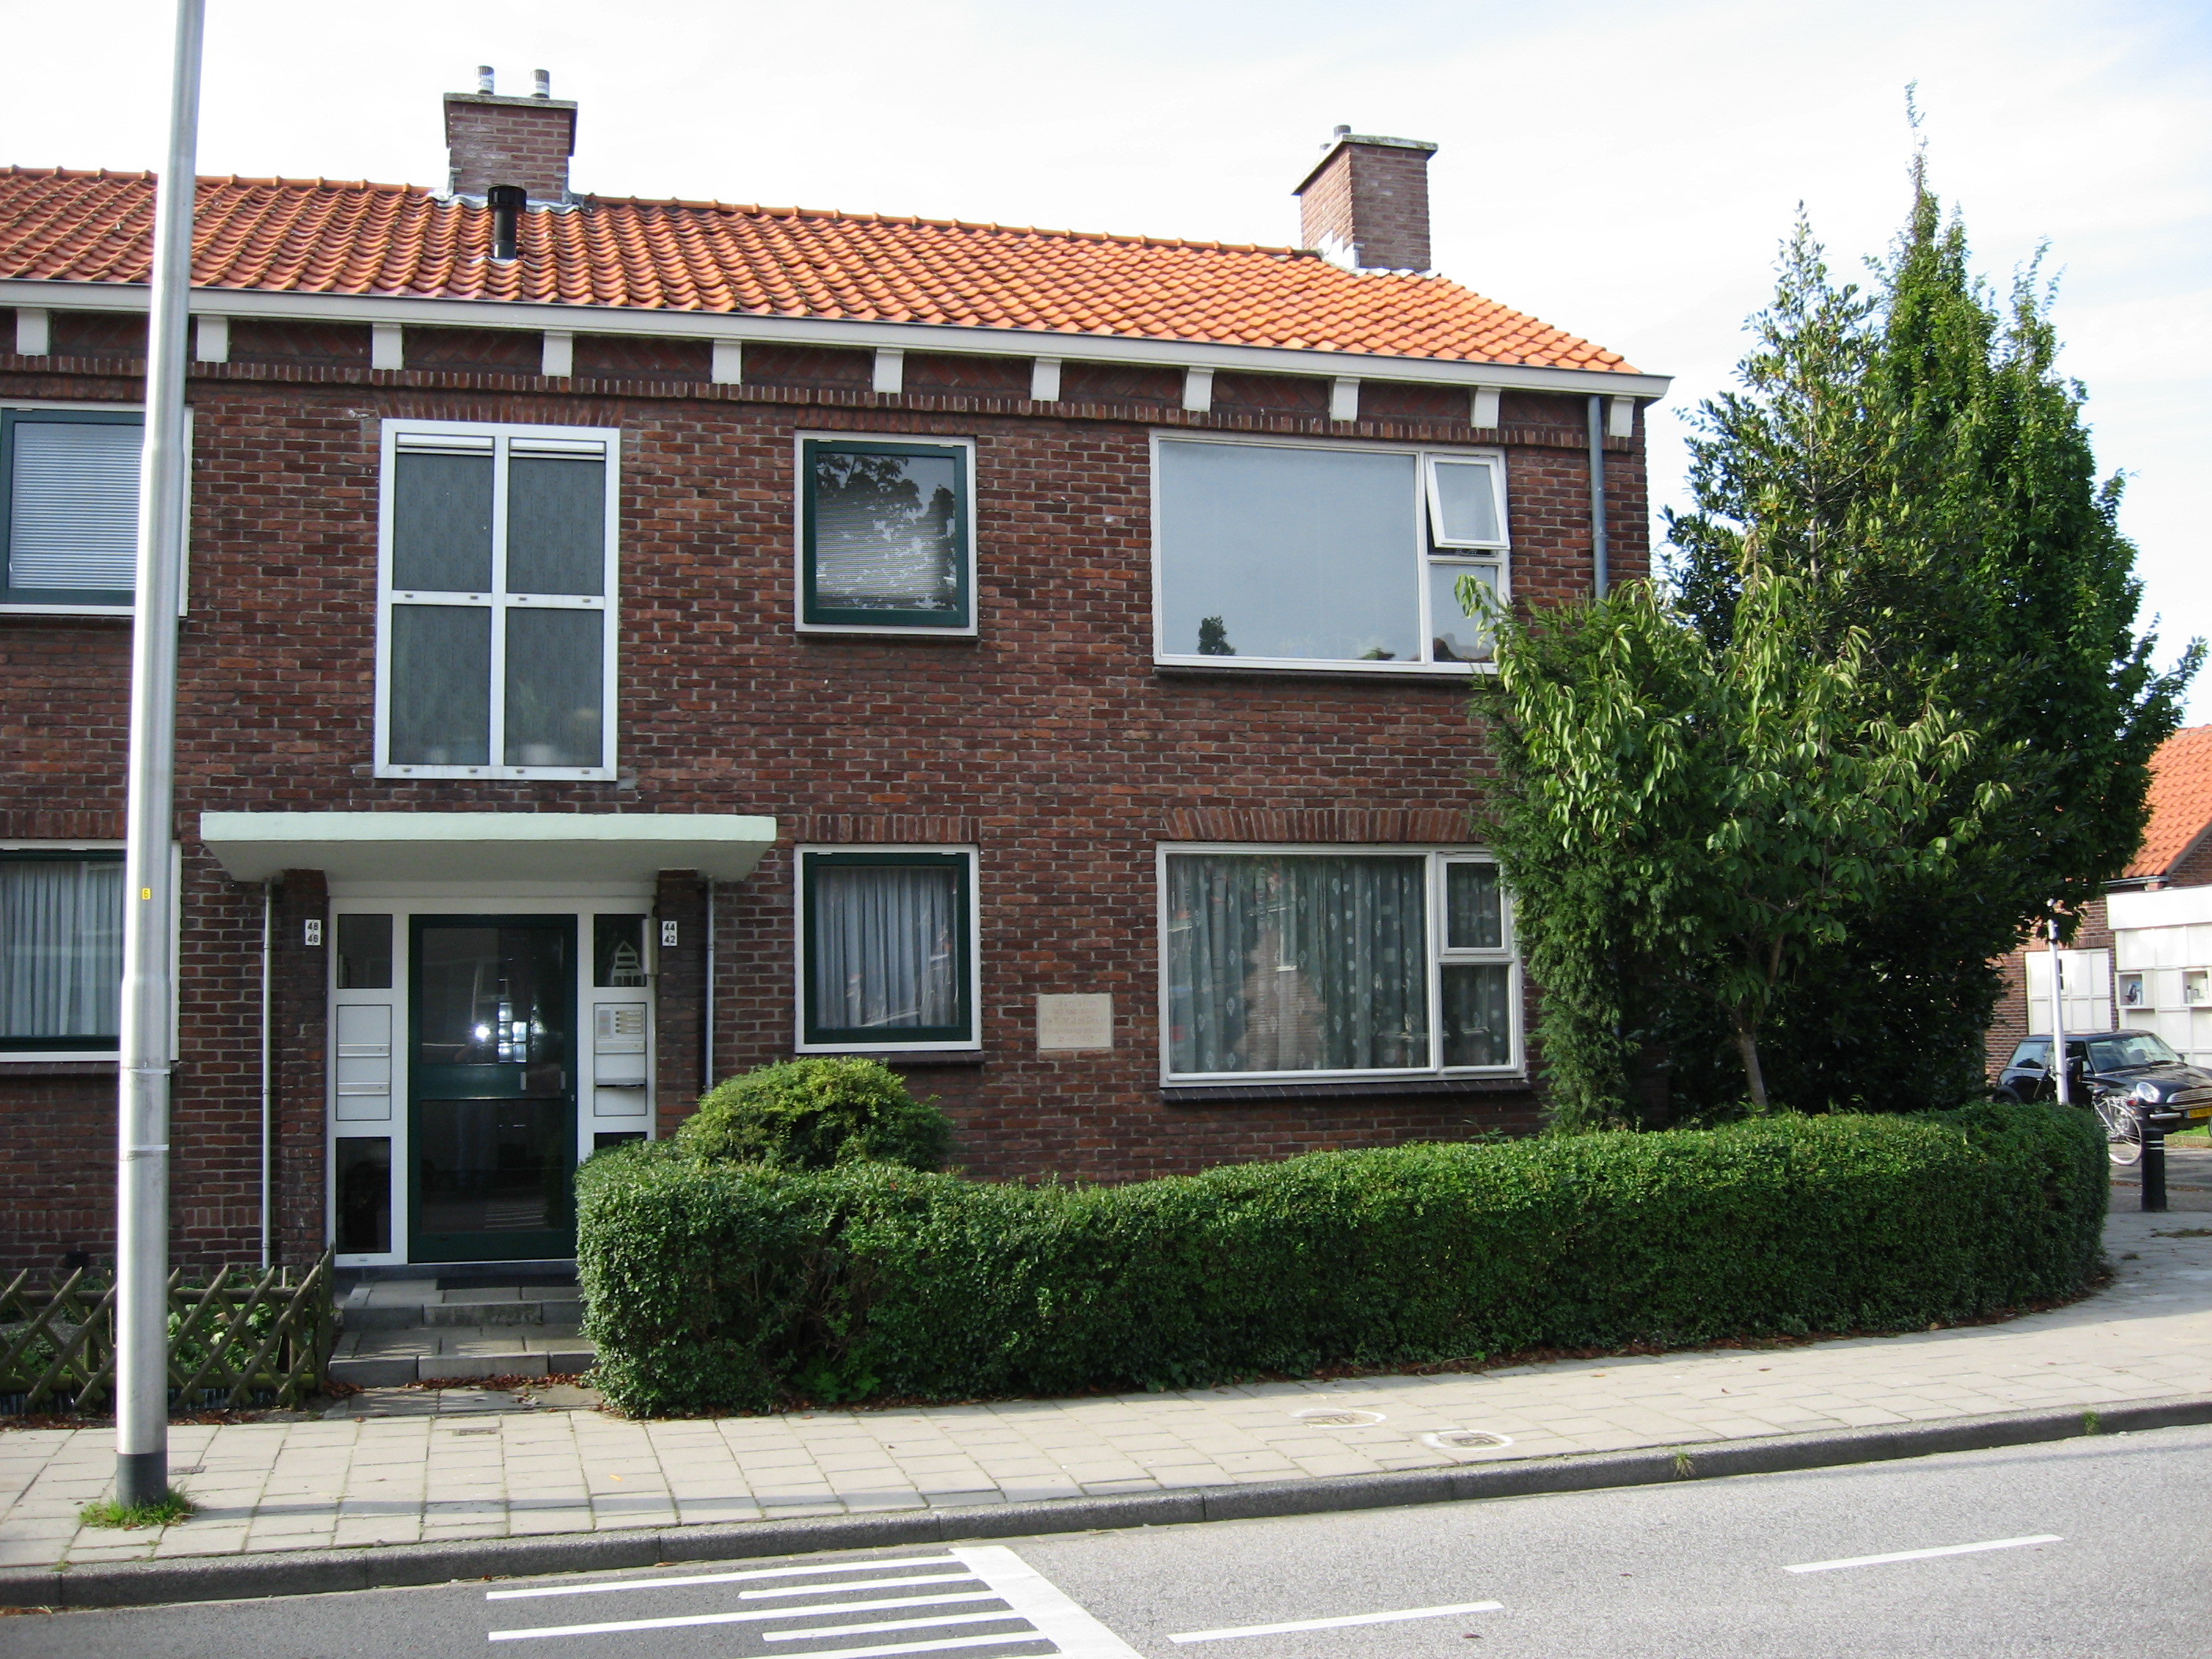 Broekweg 79, 2161 XB Lisse, Nederland